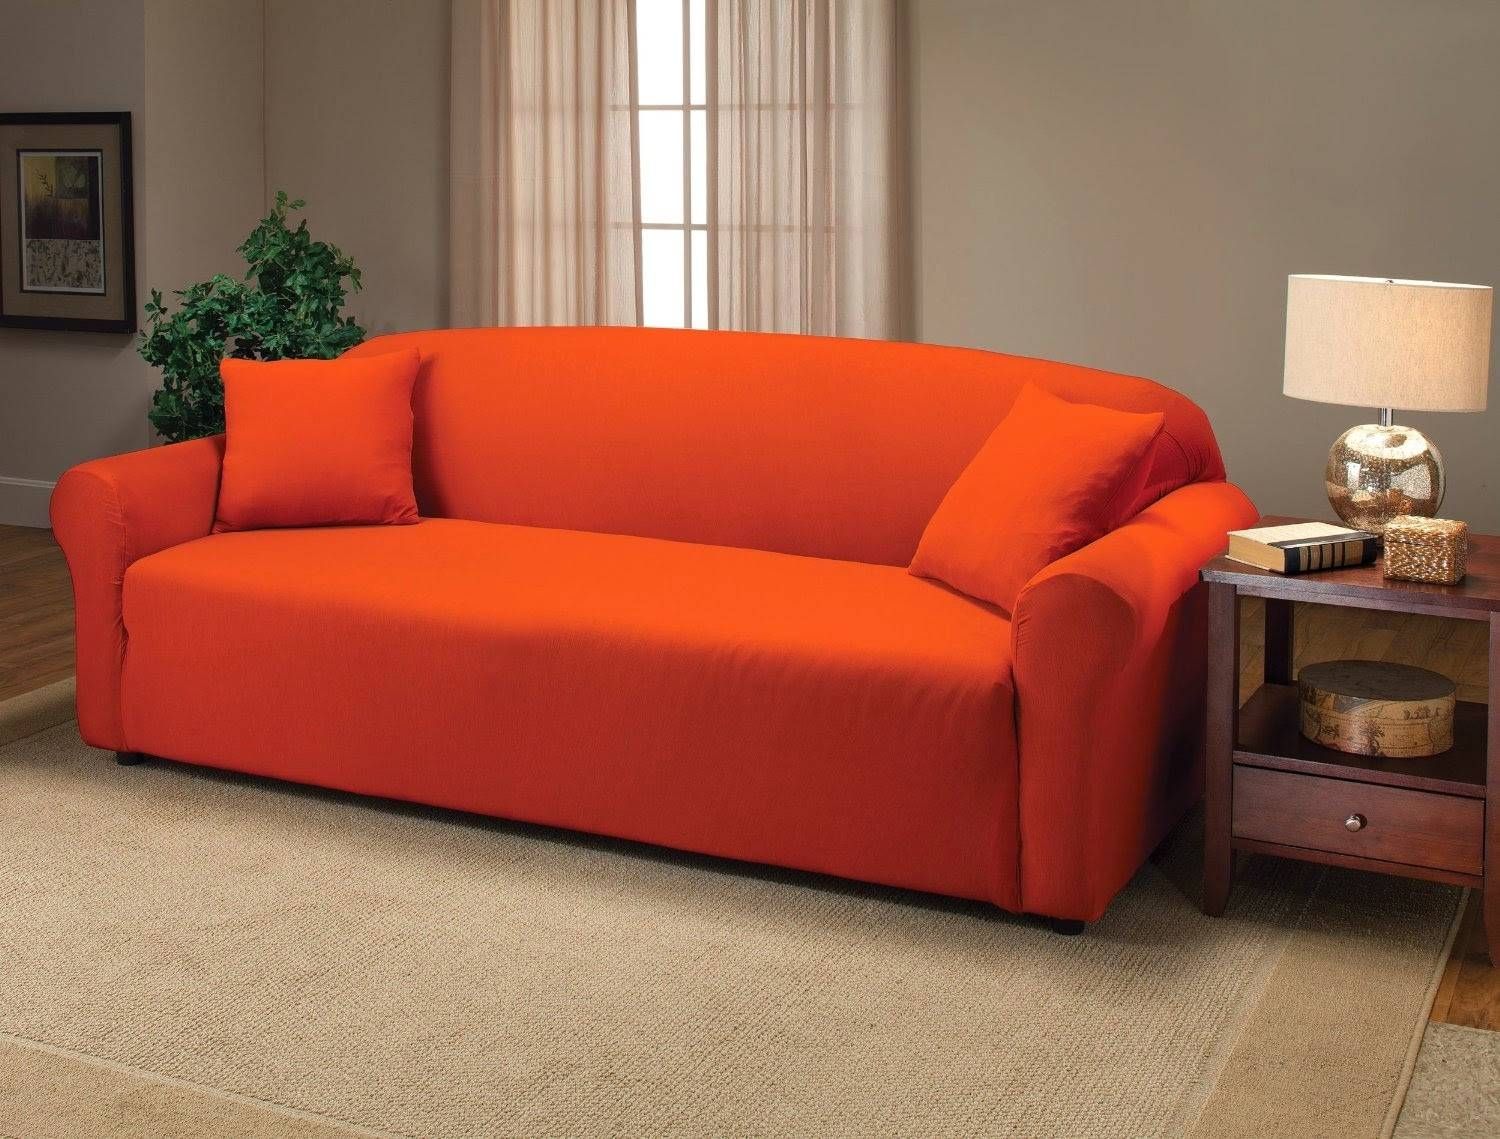 Orange Sofas 17 With Orange Sofas | Jinanhongyu With Regard To Burnt Orange Sofas (Photo 8 of 15)